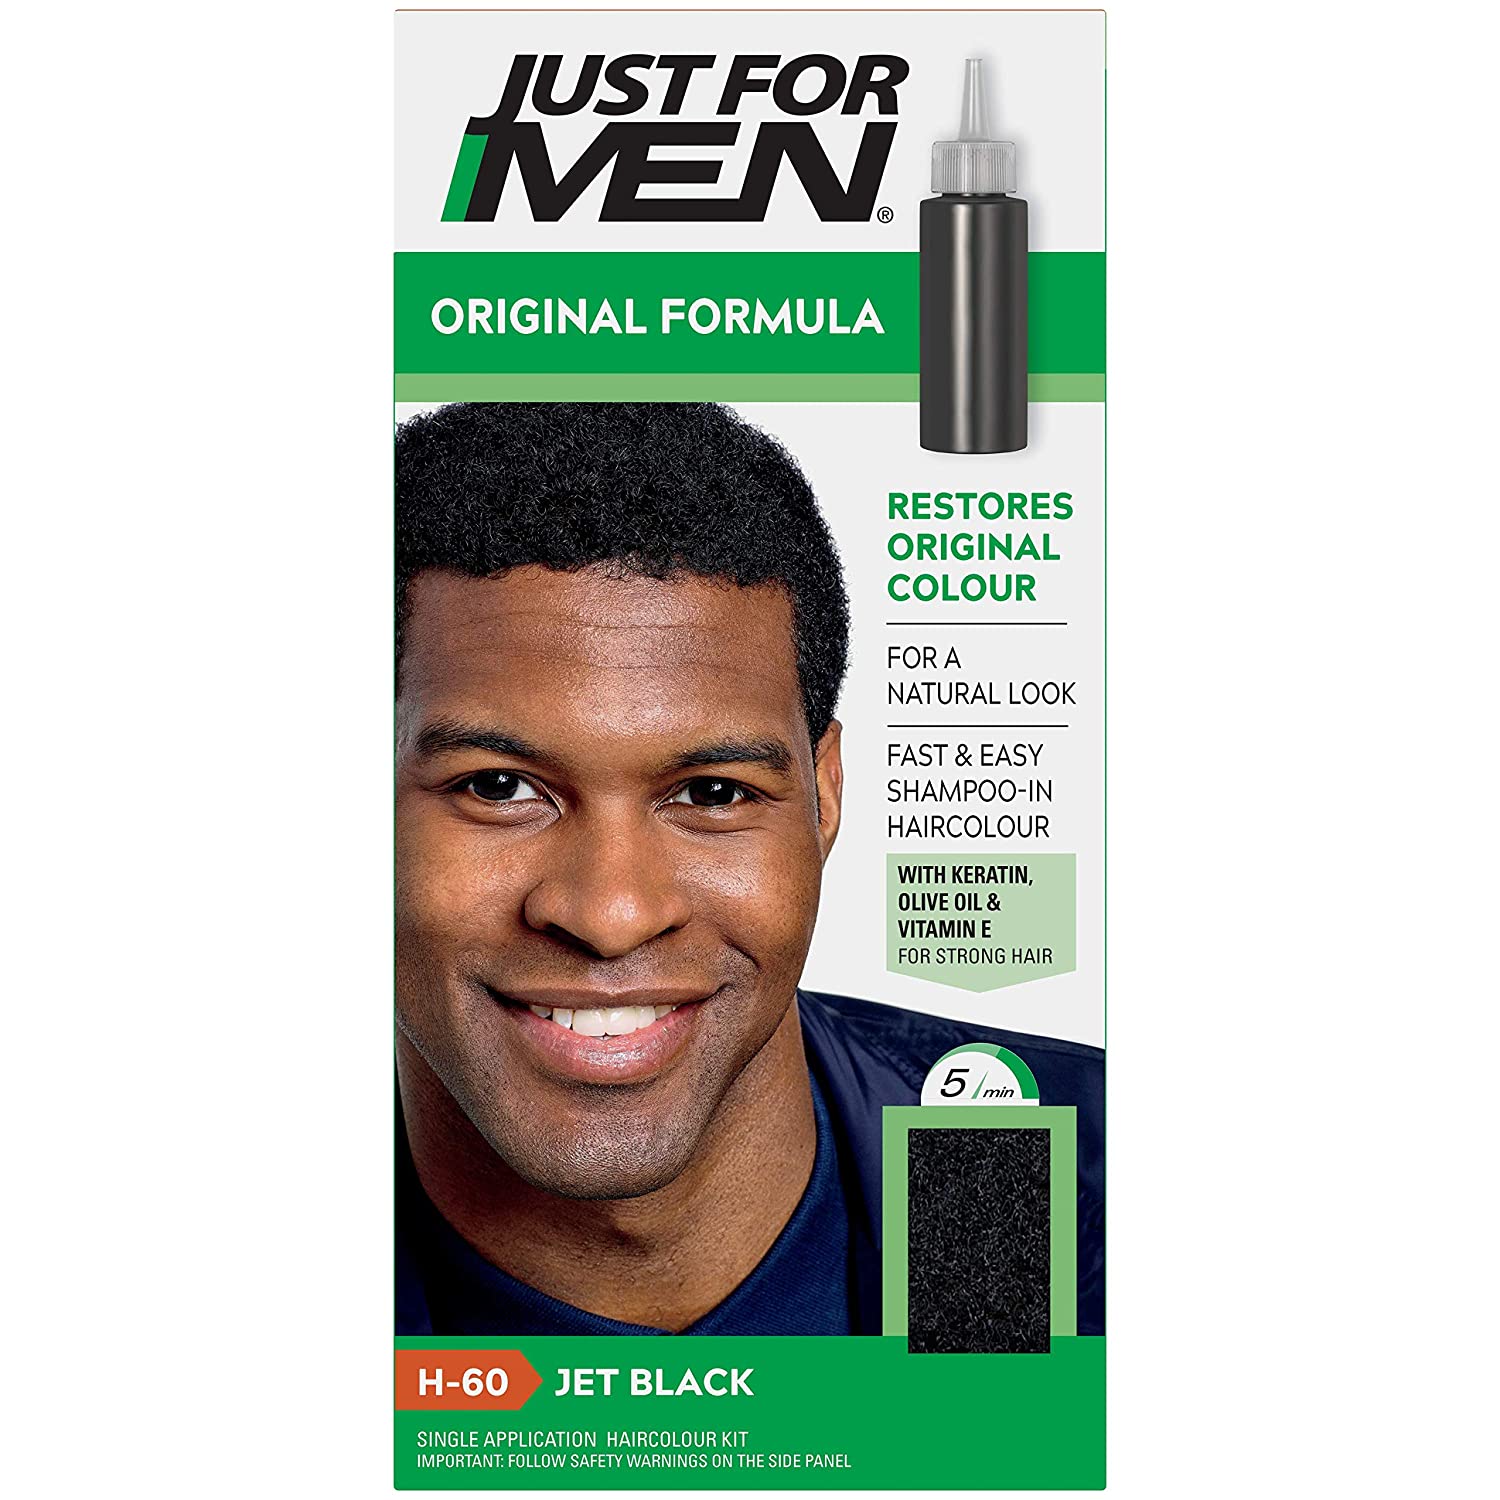 Just For Men Original Formula Men's Hair Color, Jet Black